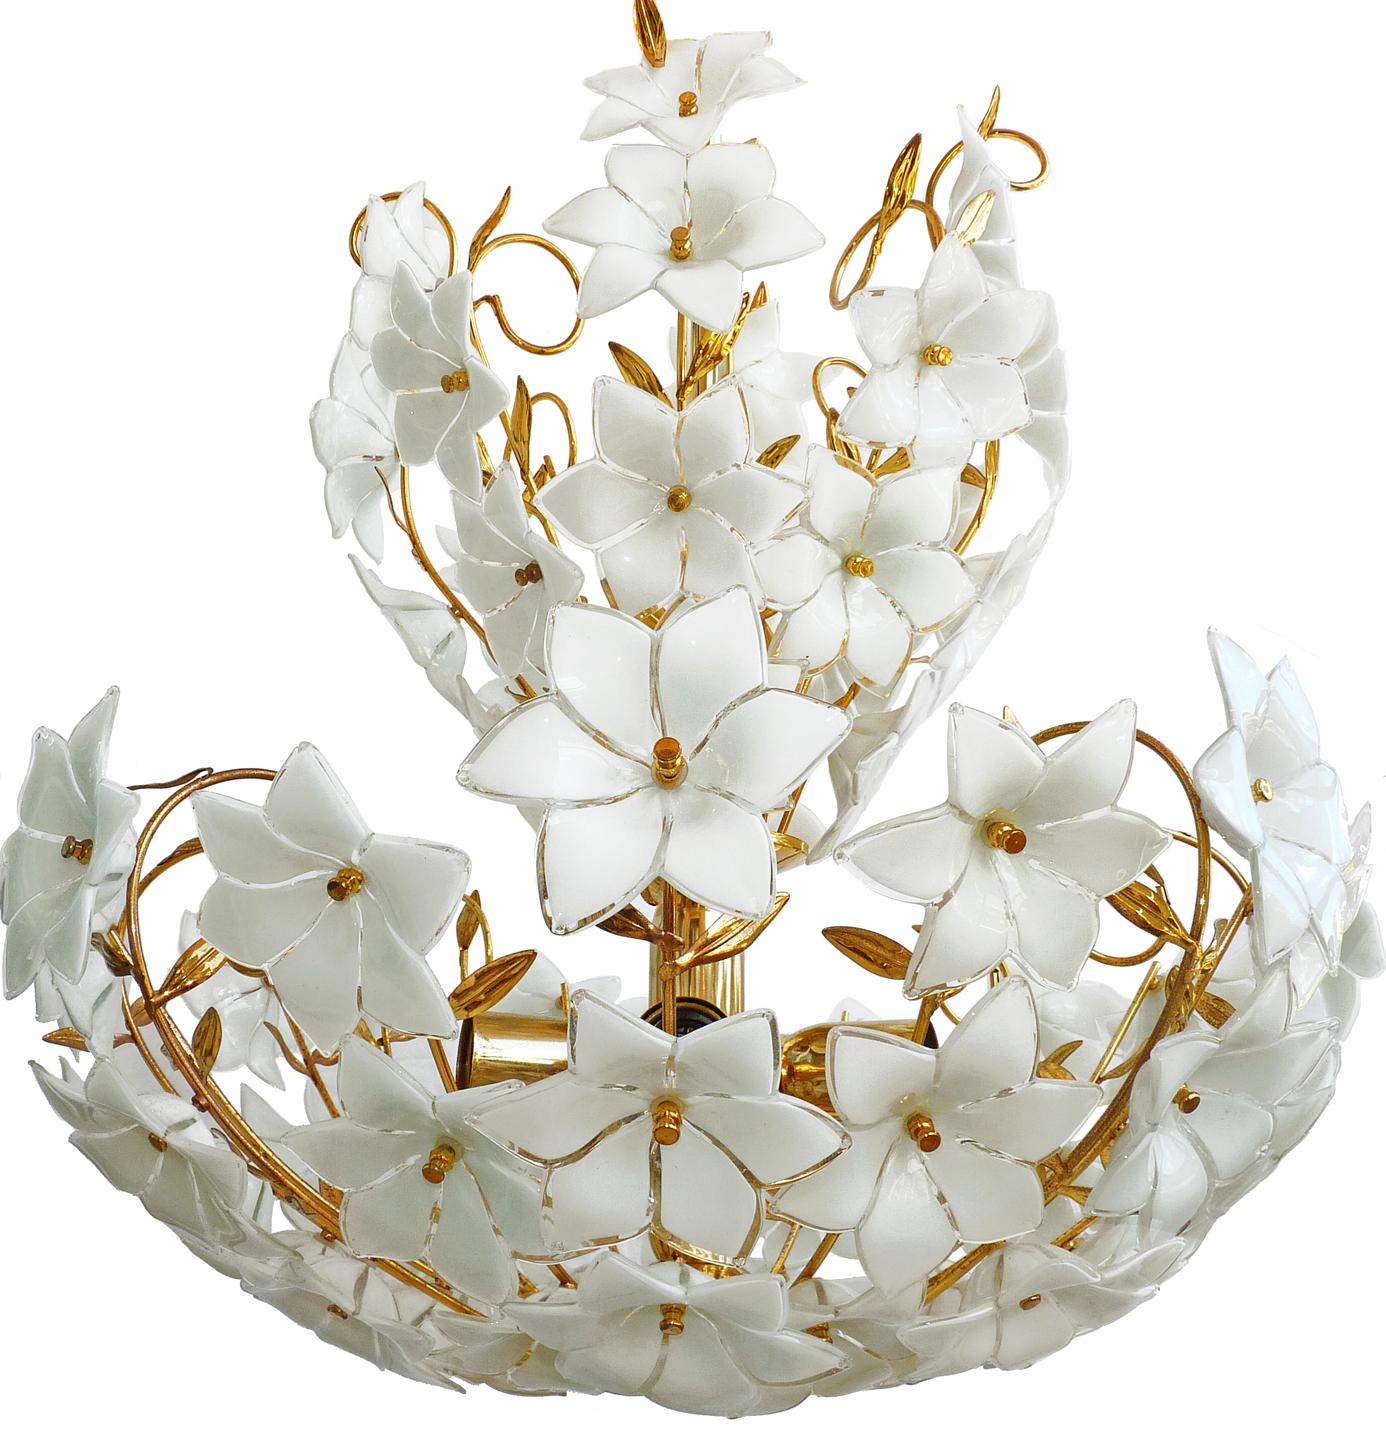 Großes italienisches Murano-Blumenbouquet aus der Mitte der 1990er Jahre, das Venini zugeschrieben wird. Kunstglas mit 72 mundgeblasenen weißen und klaren Glasblumen und vergoldetem Messing. Habe auch ein passendes Paar.
Maßnahmen:
Durchmesser 24